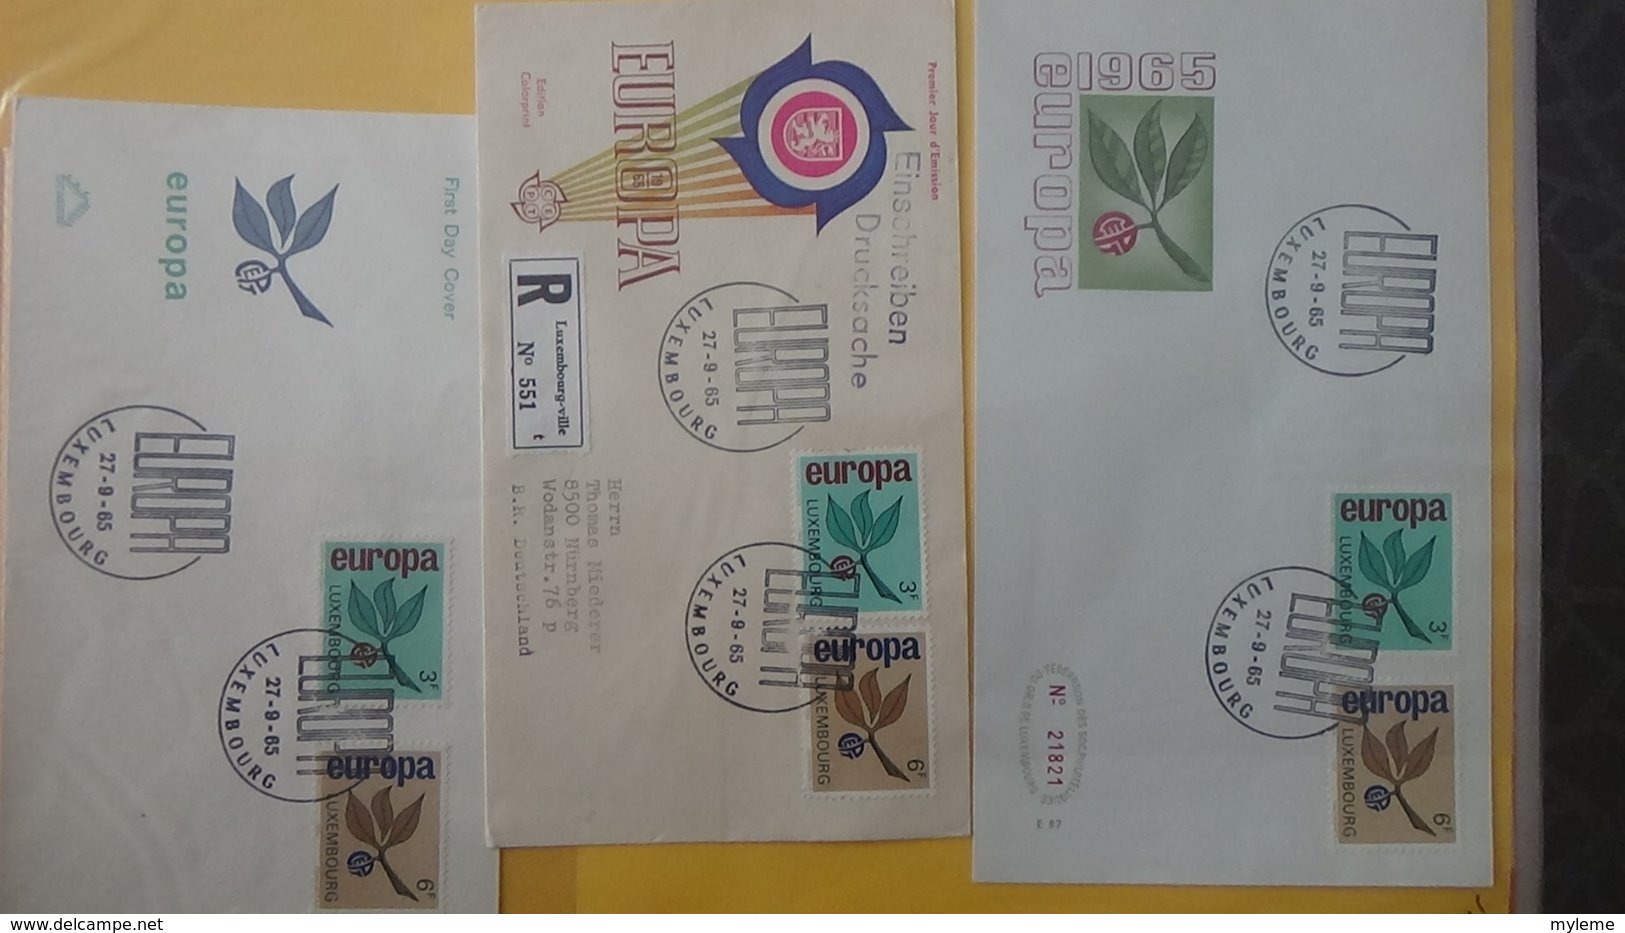 Dispersion d'une collection d'enveloppe 1er jour et autres dont 111 sur le thème EUROPA Luxembourg